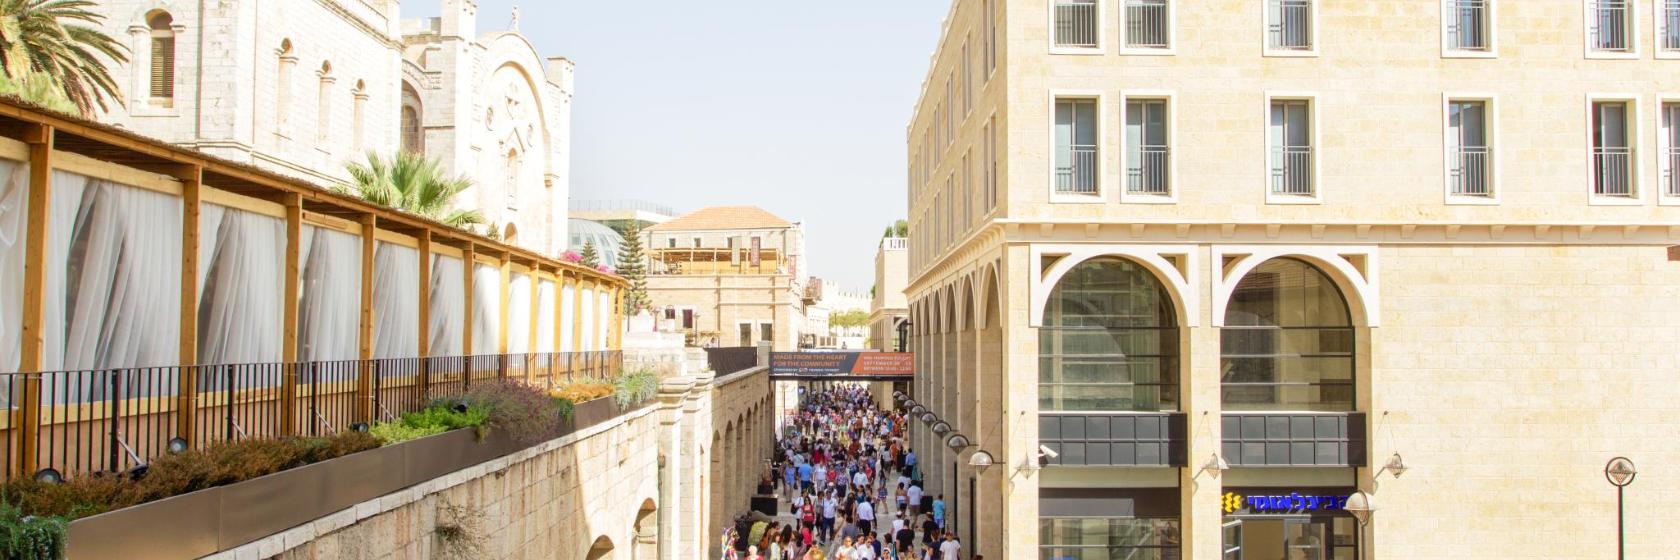 10 המלונות הטובים ביותר בסביבת קניון ממילא בירושלים, ישראל